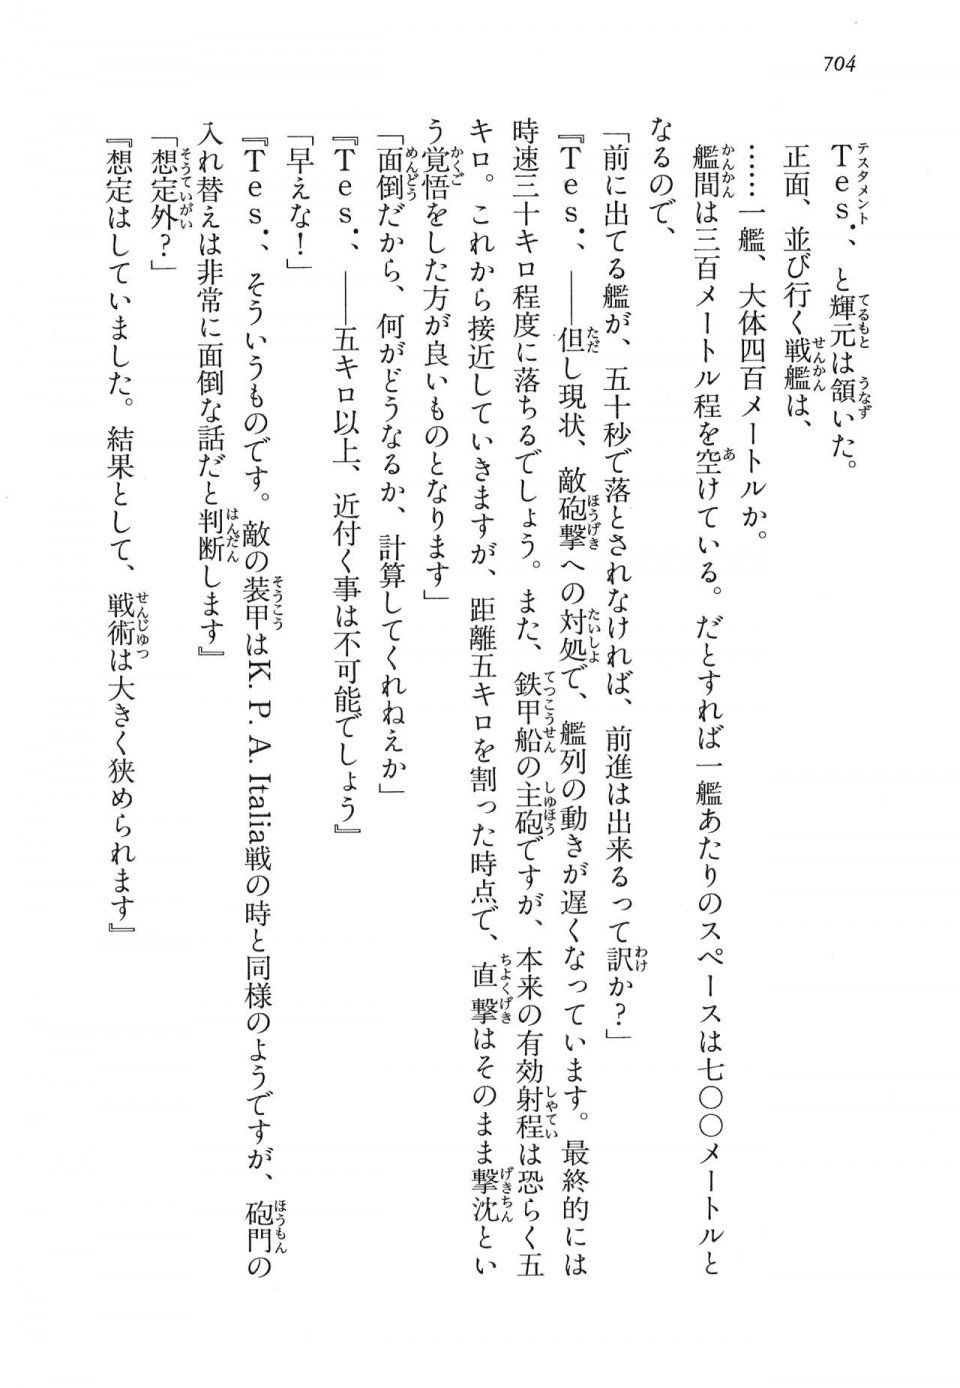 Kyoukai Senjou no Horizon LN Vol 16(7A) - Photo #704